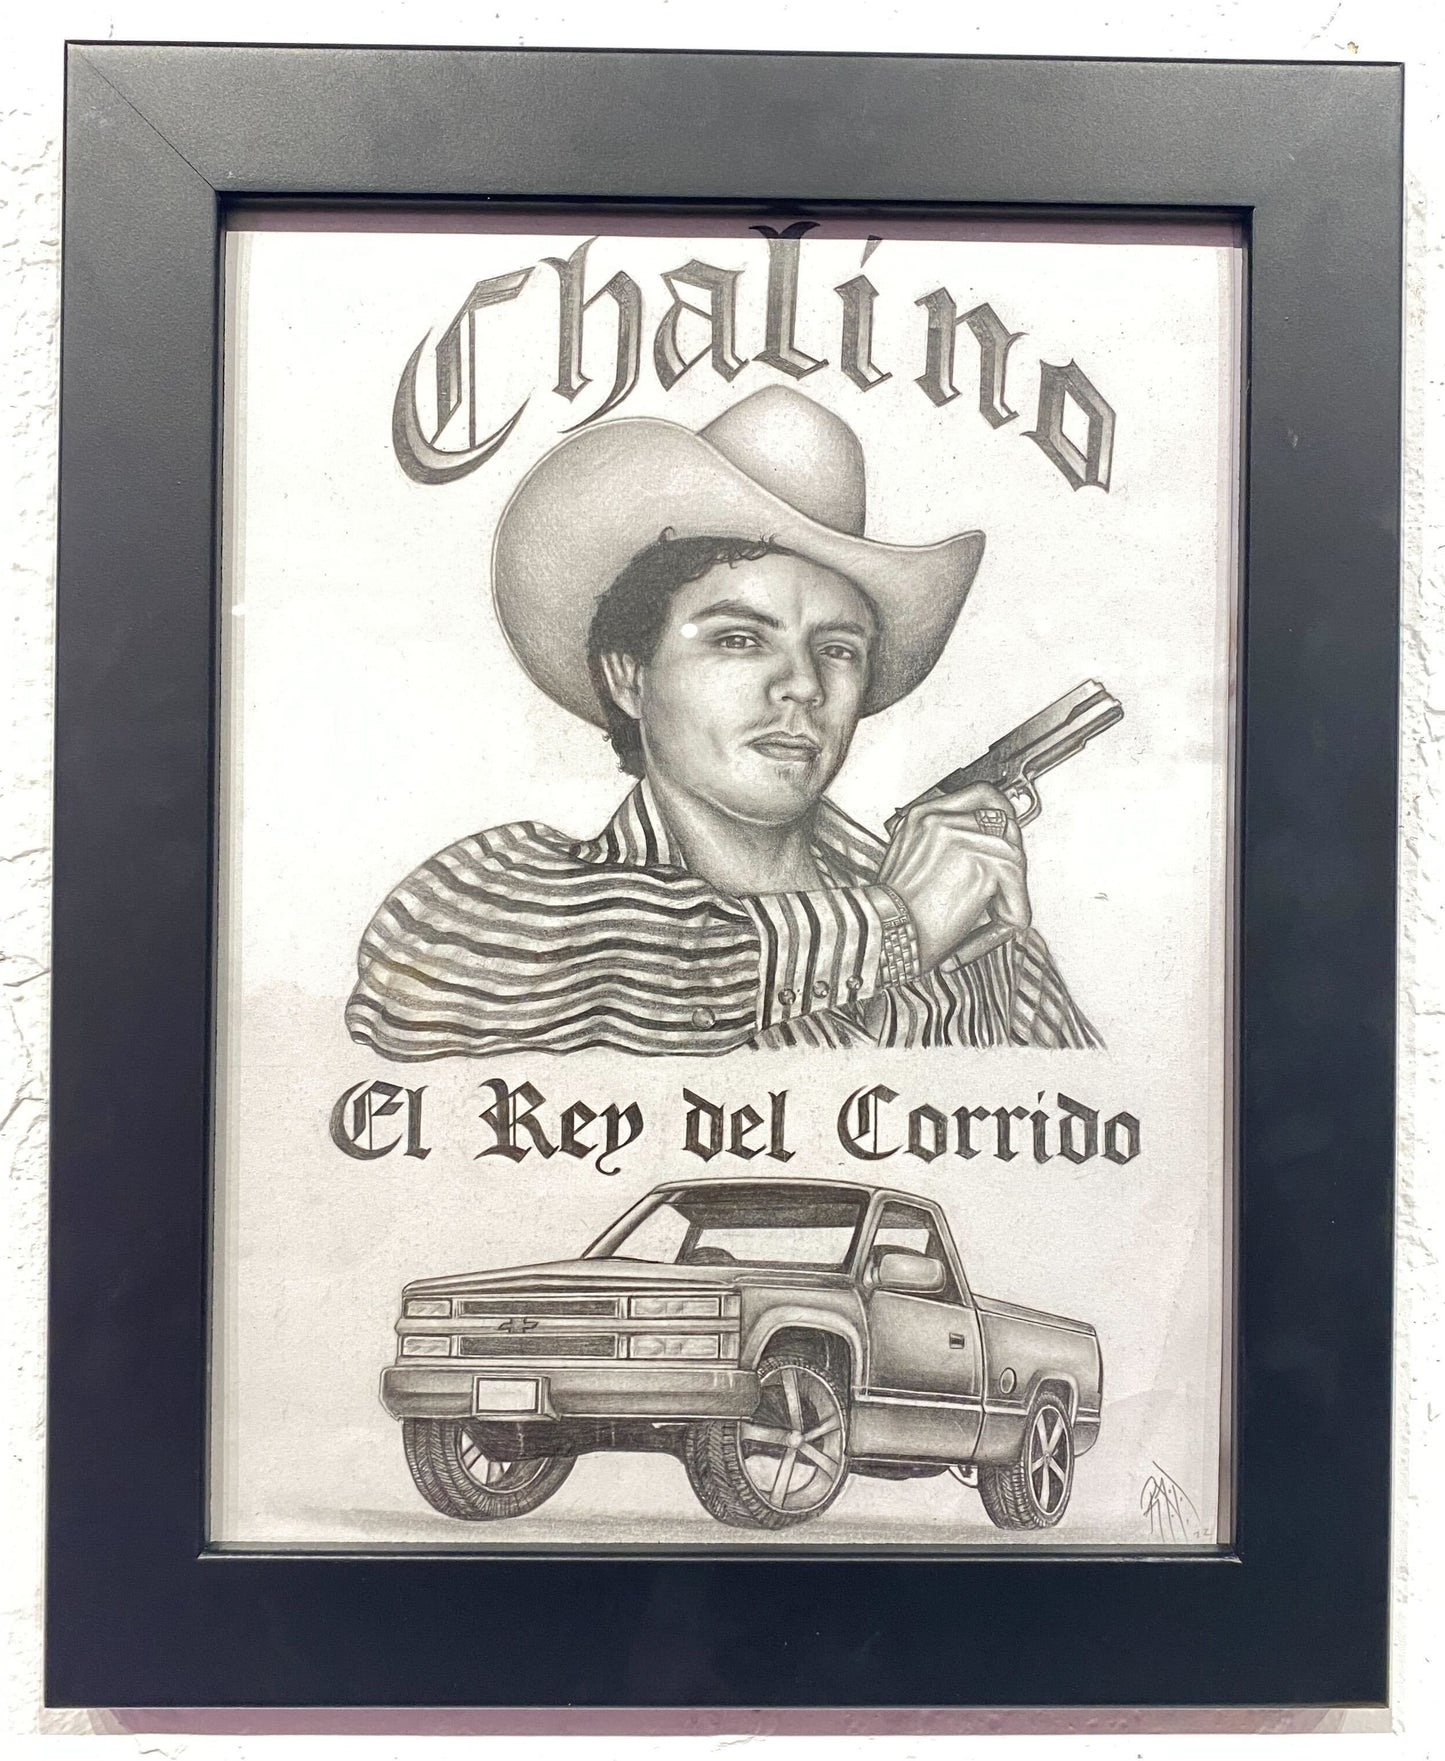 Erotic Rat - Chalino El Rey del Corrido